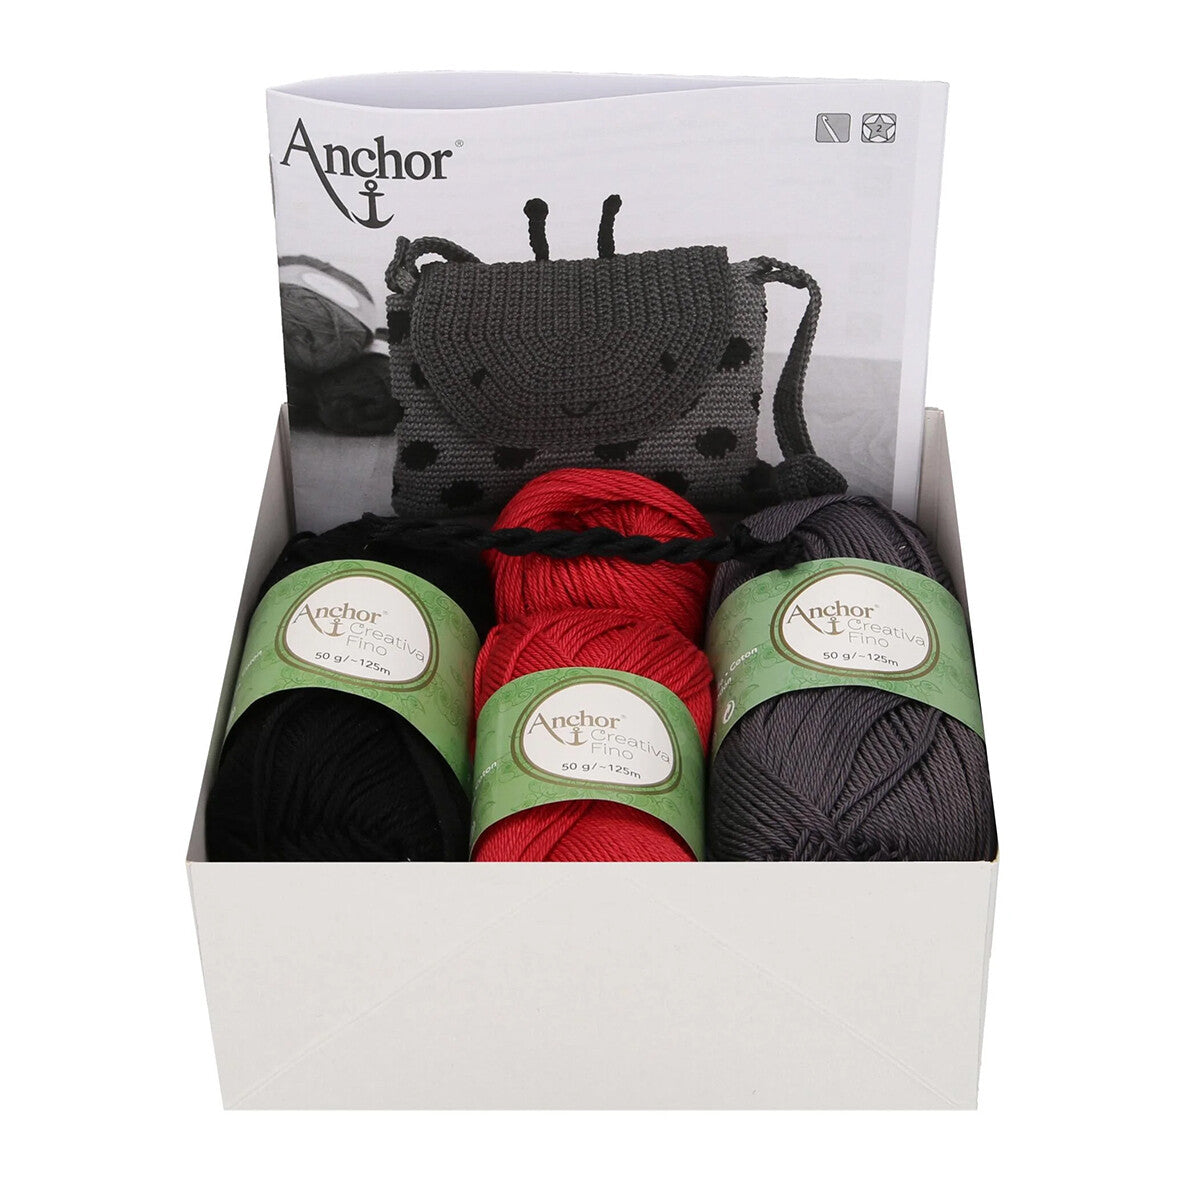 Anchor Baby Pure Cotton Ludybug Bag Set - A28C006-09063